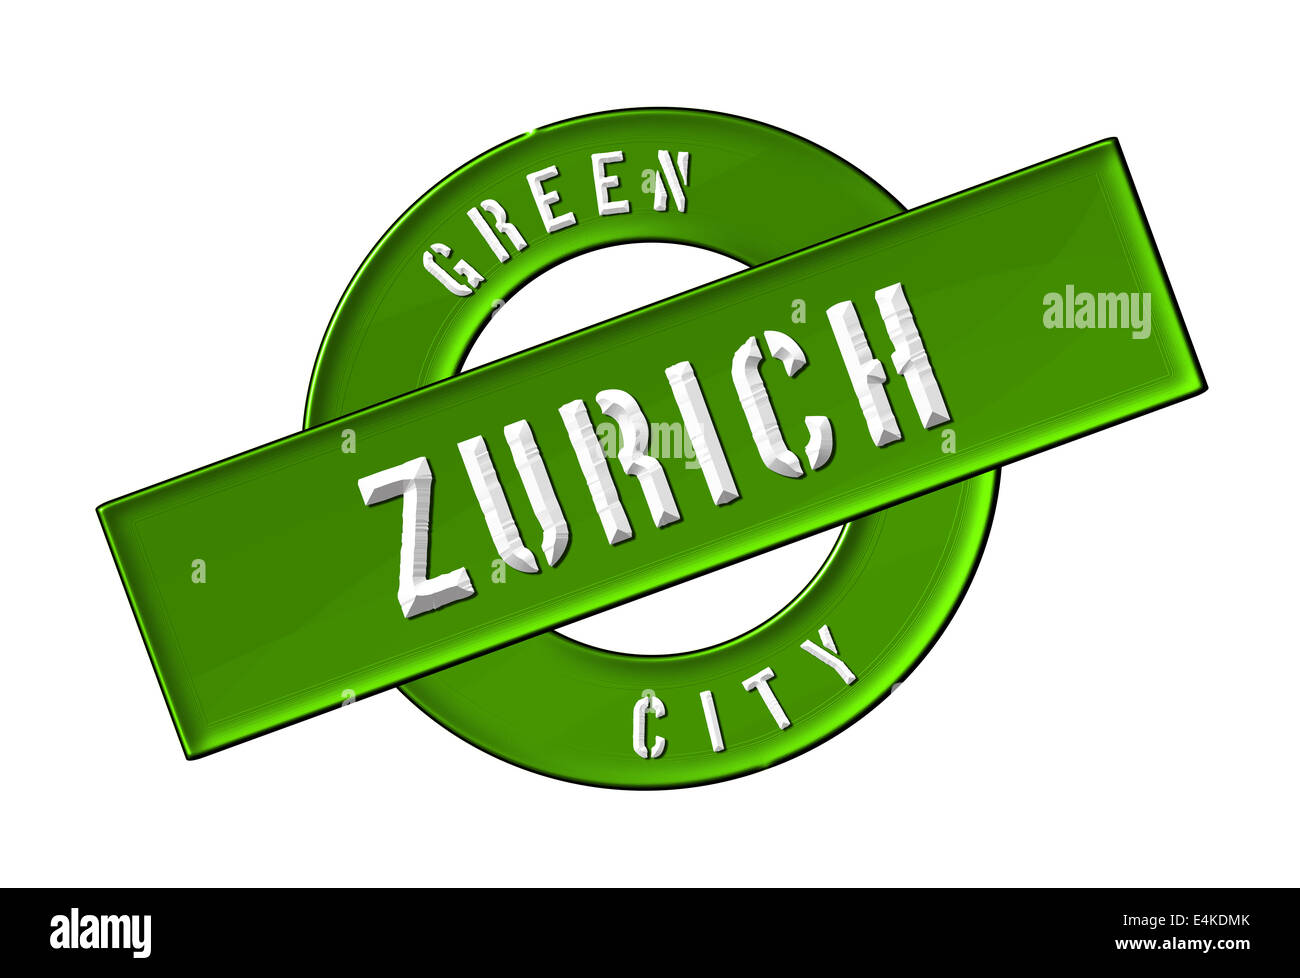 GREEN CITY ZURICH Stock Photo